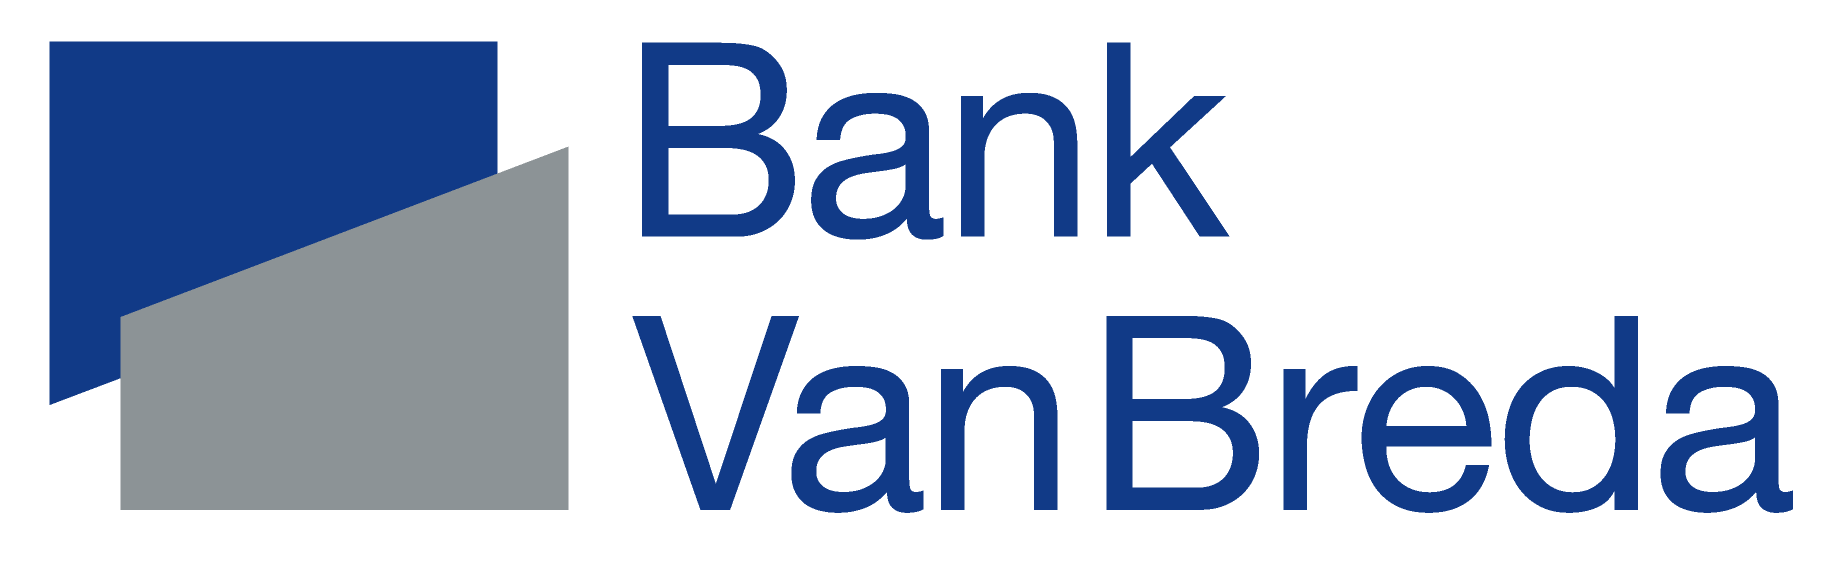 Bank van Breda website